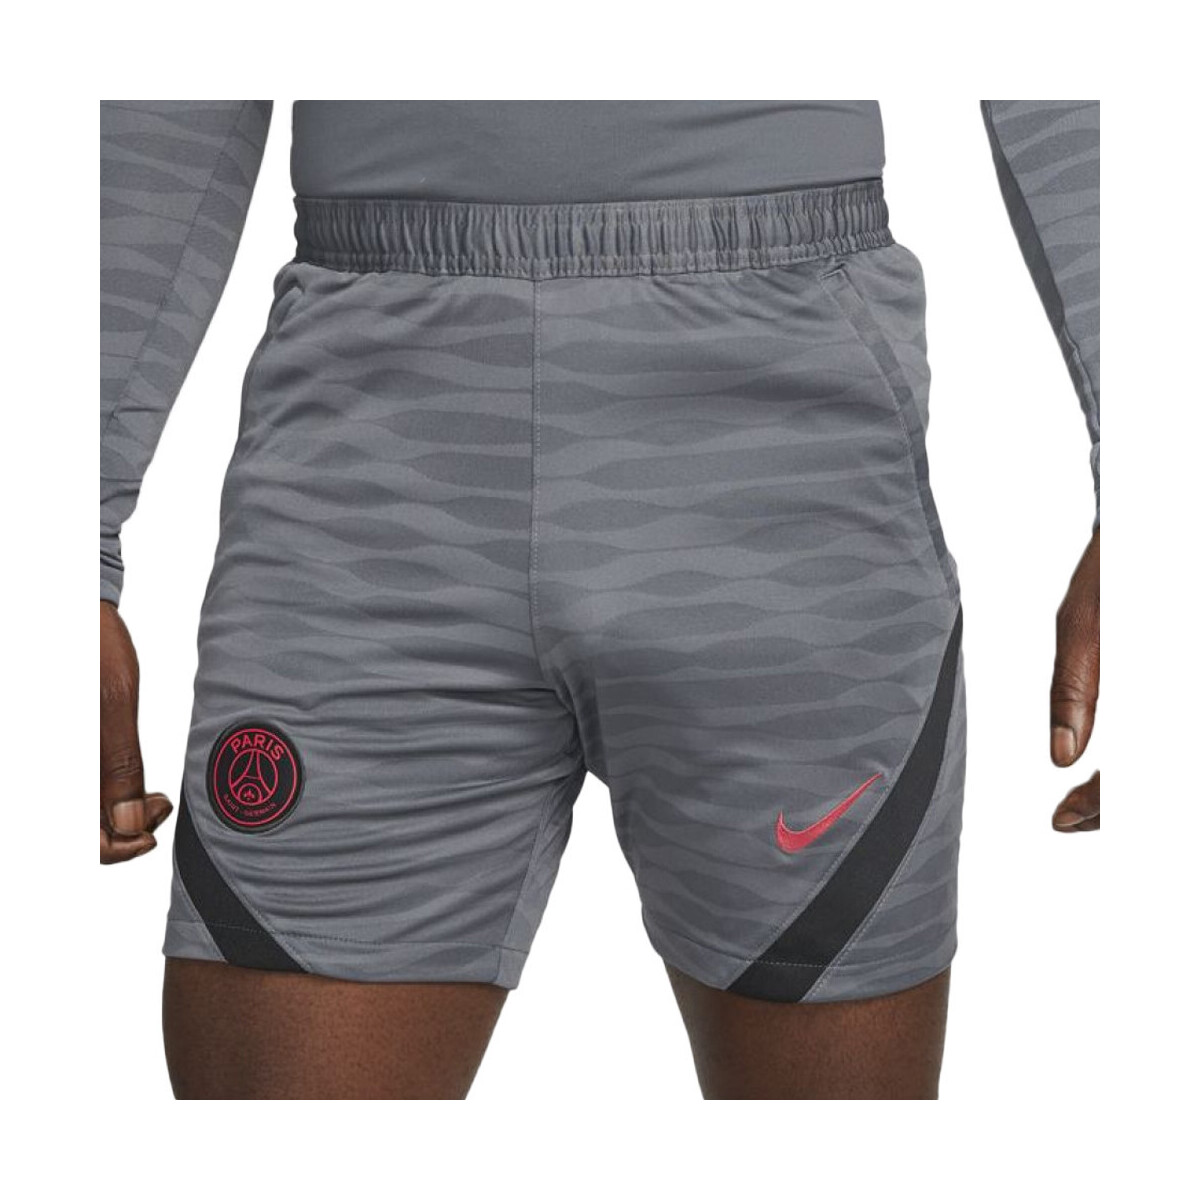 Textil Homem Shorts / Bermudas Nike  Cinza